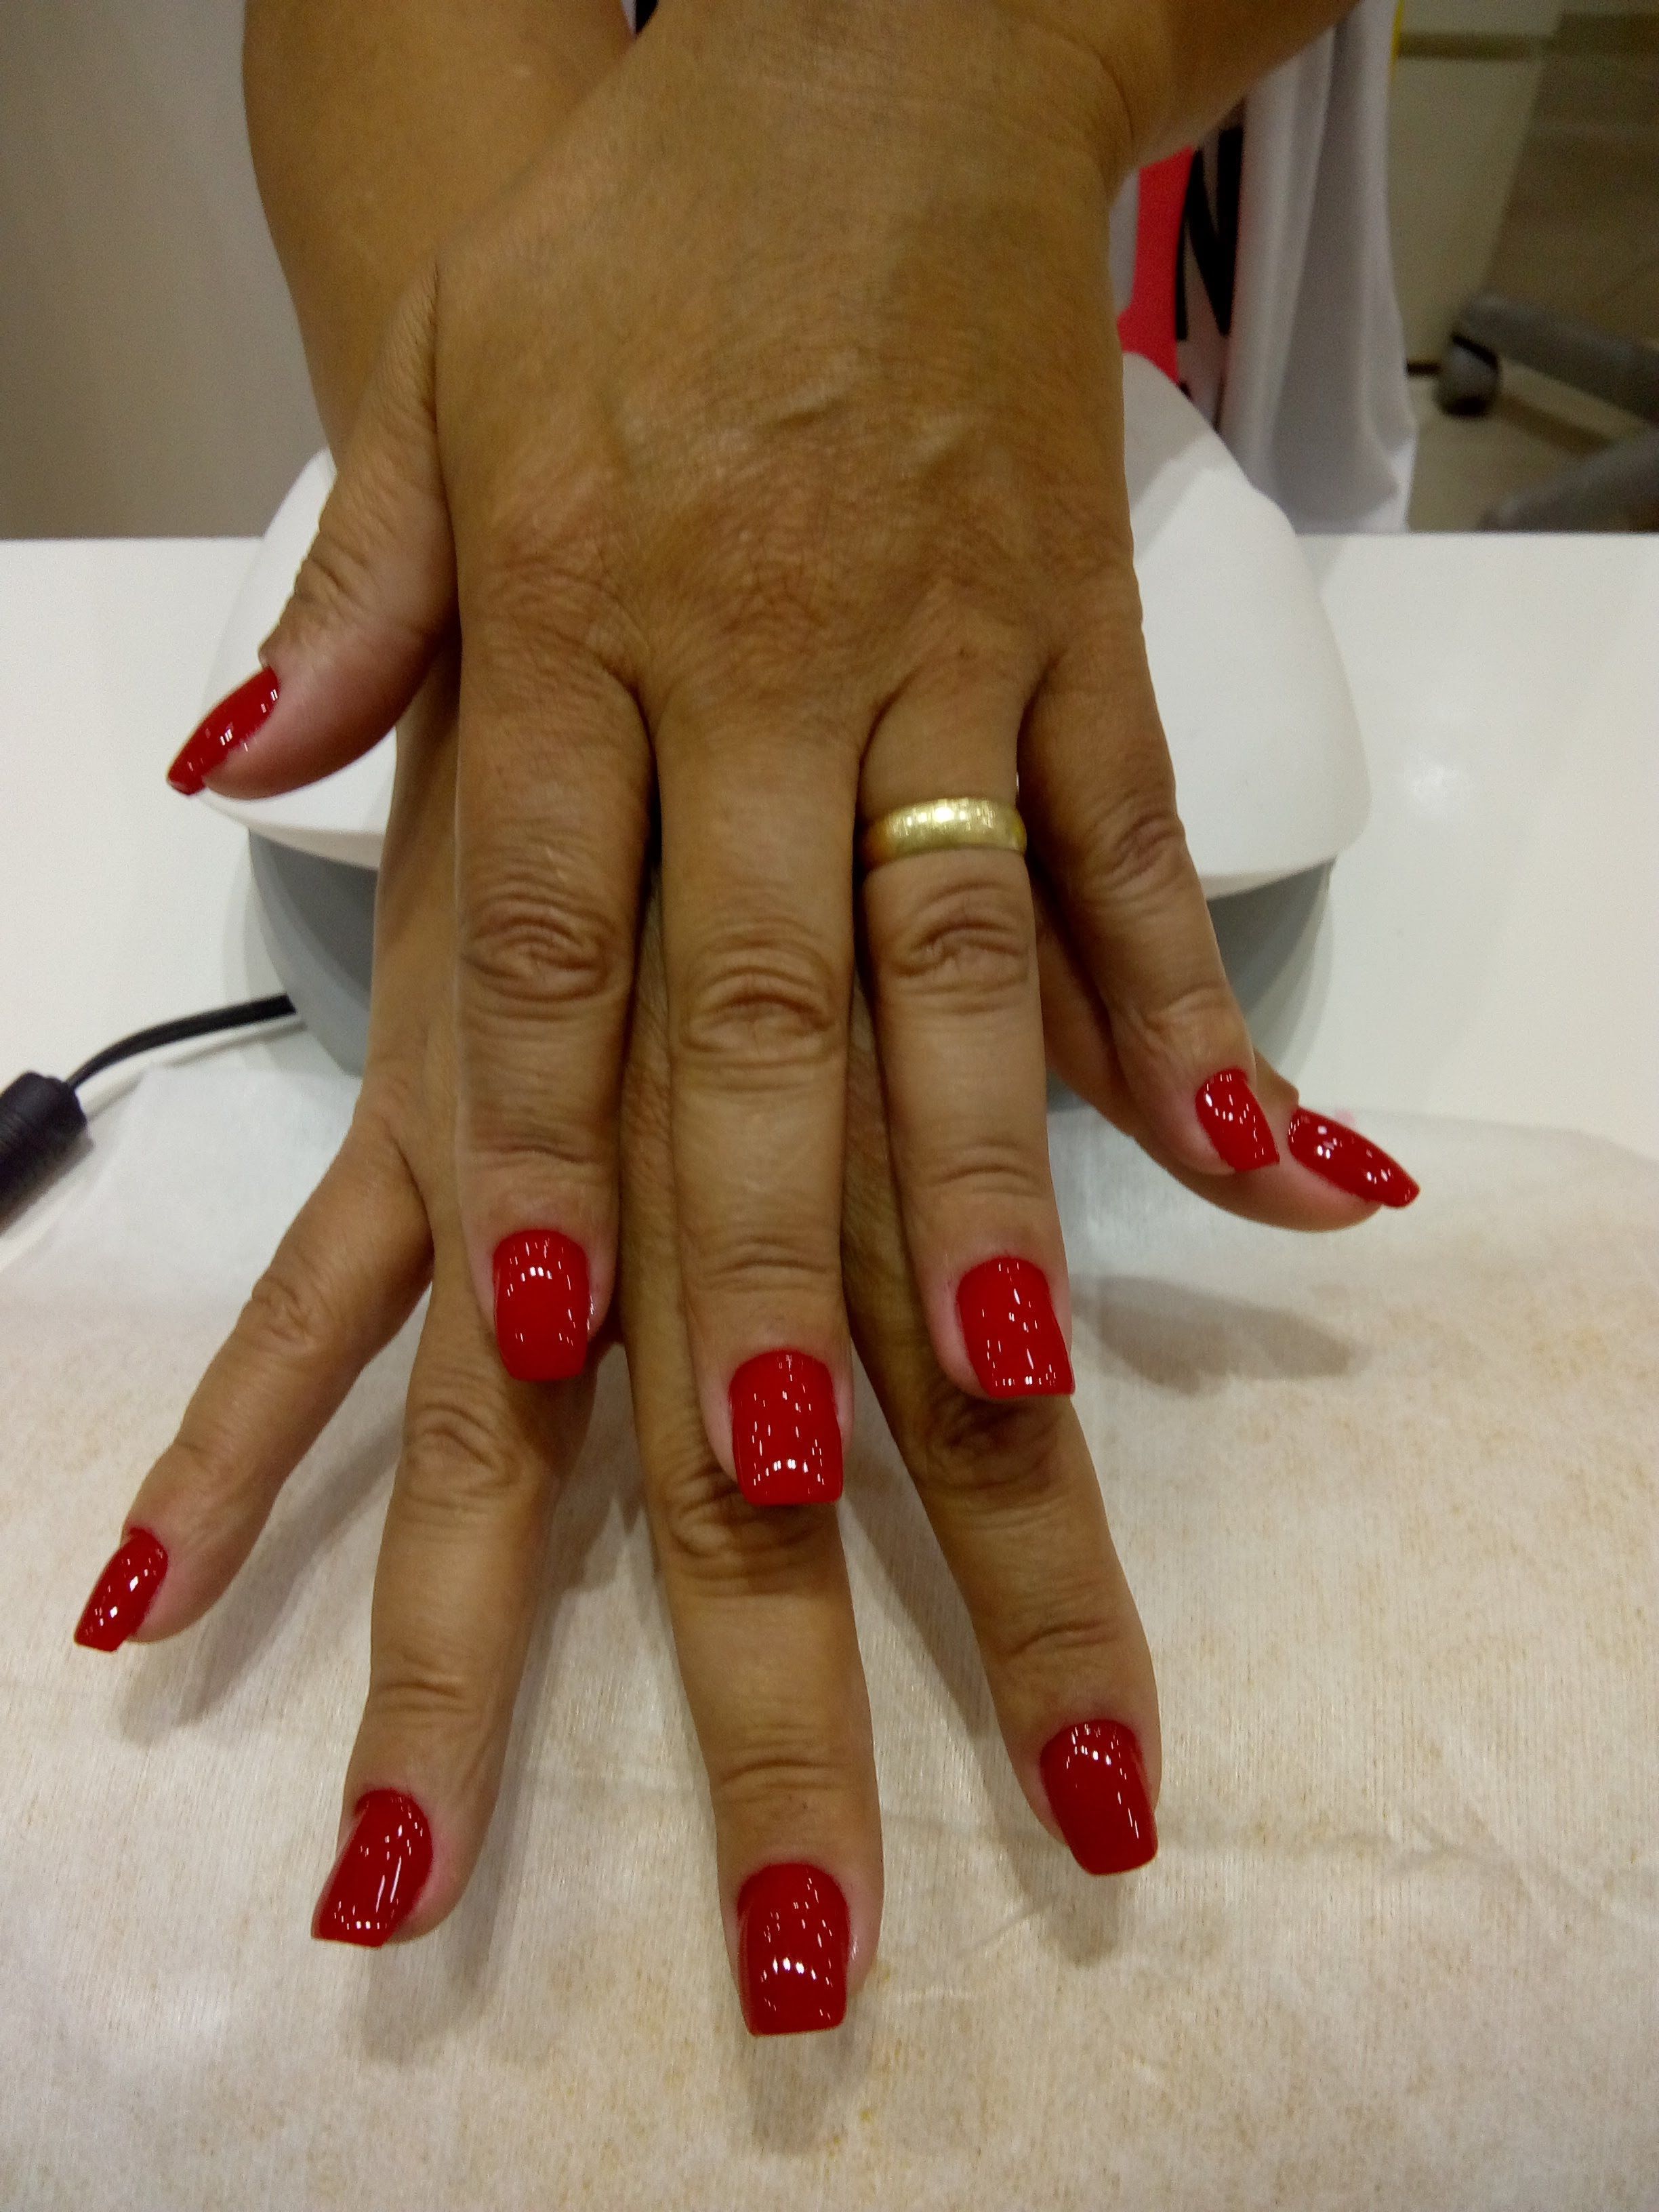 Banho de gel 
Vermelho maravilha manicure e pedicure manicure e pedicure manicure e pedicure manicure e pedicure manicure e pedicure manicure e pedicure